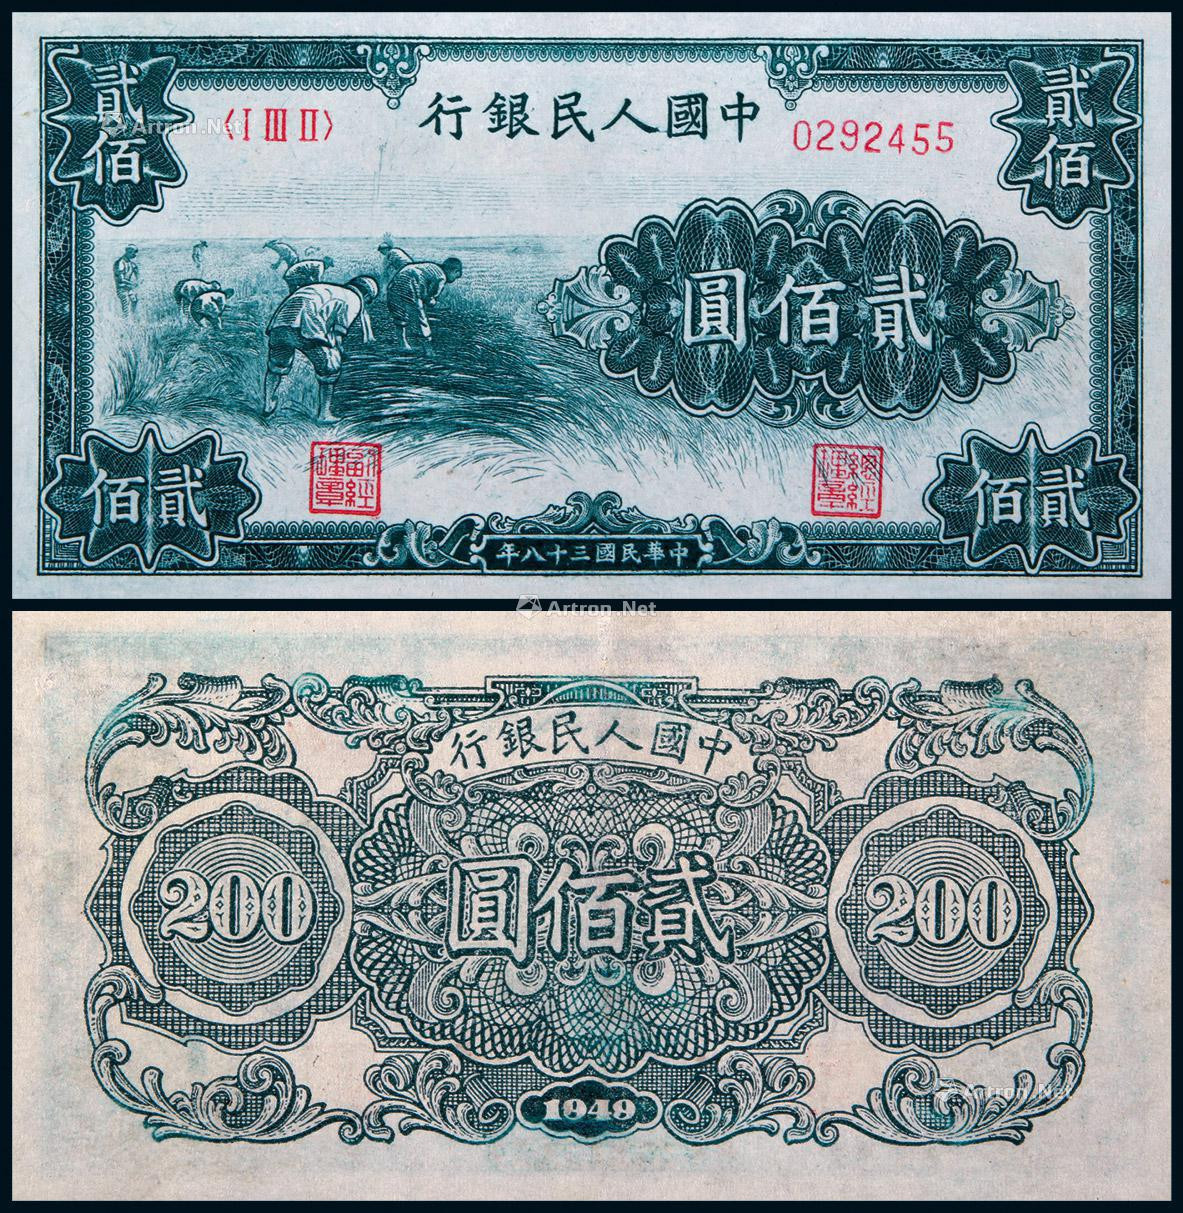 1949年第一版人民币贰佰圆割稻